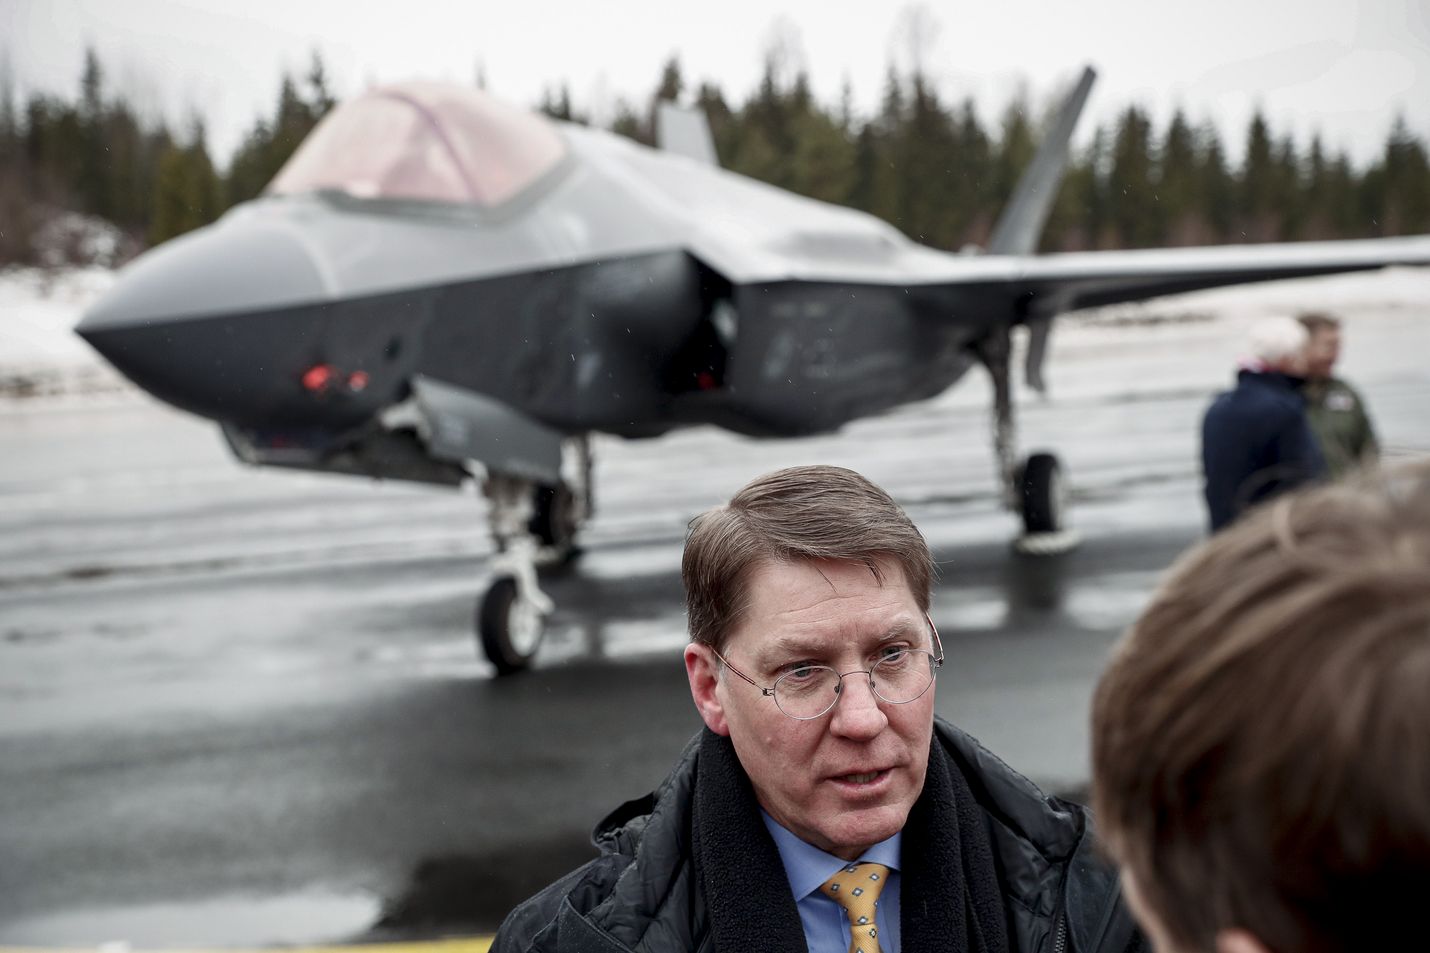 Lockheed Martinin ylläpidosta vastaava johtaja Steve Sheehy kertoo, että yhtiö tarjoaa Suomelle hävittäjien rakentamista.